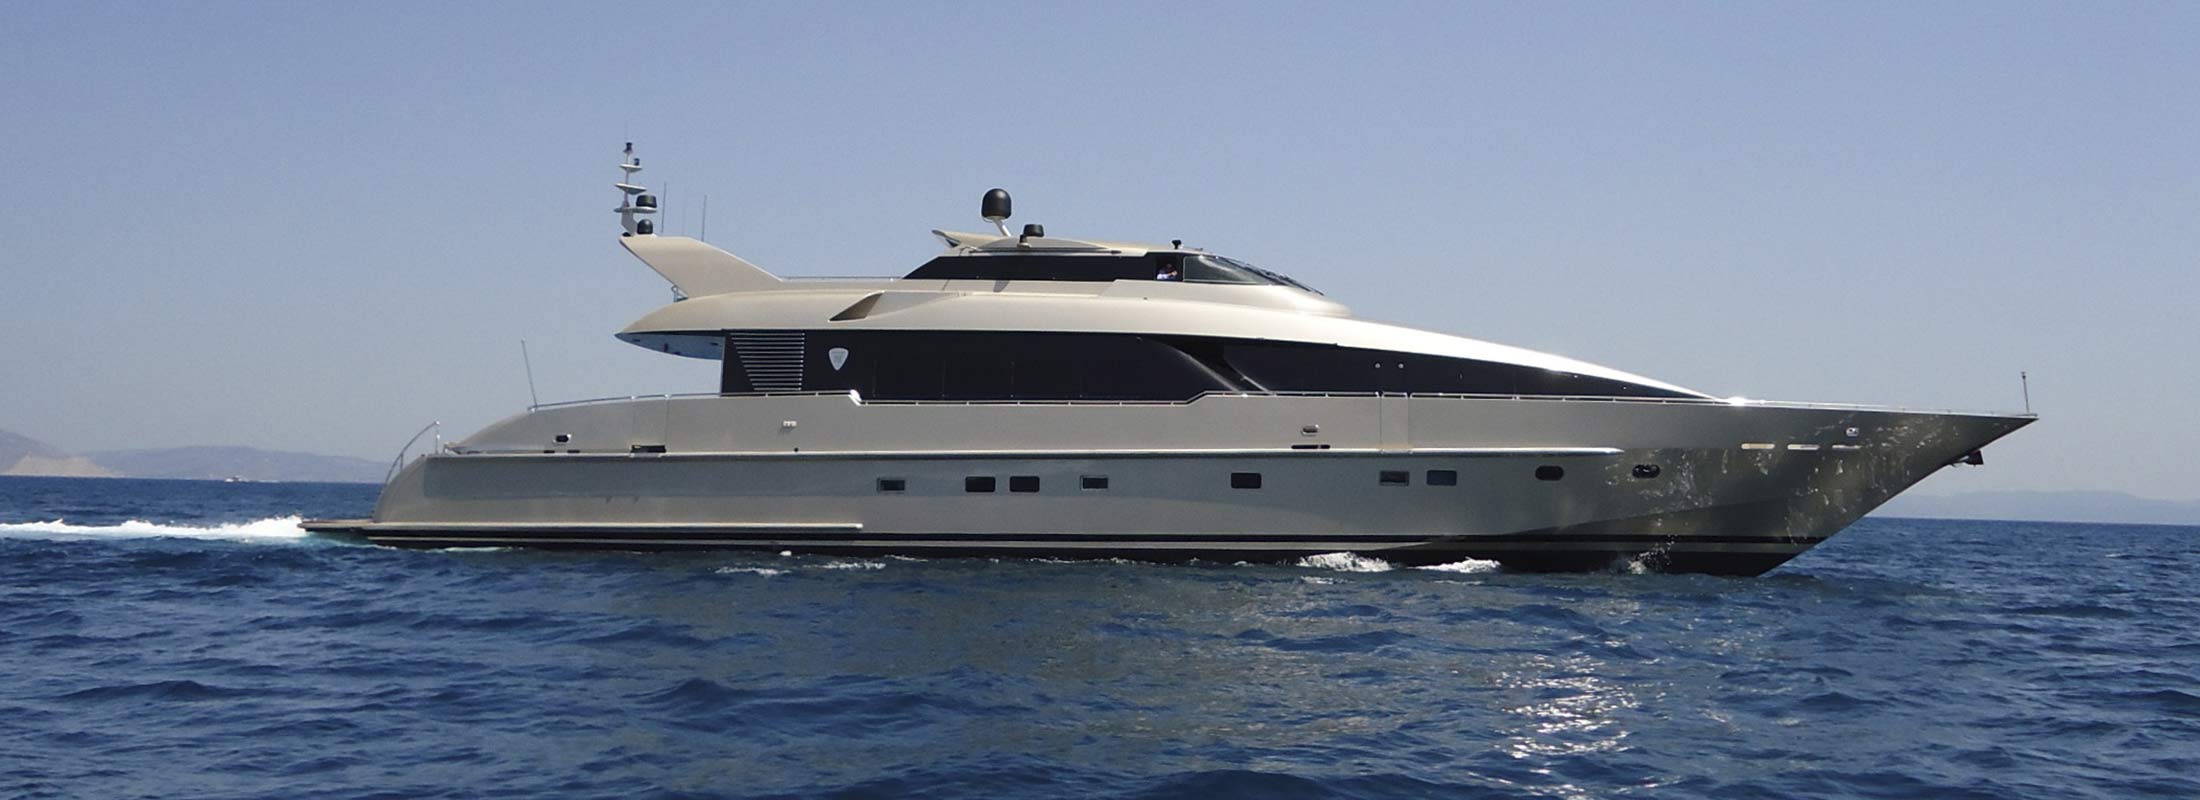 Daloli Motor Yacht for Charter Mediterranean slider 1